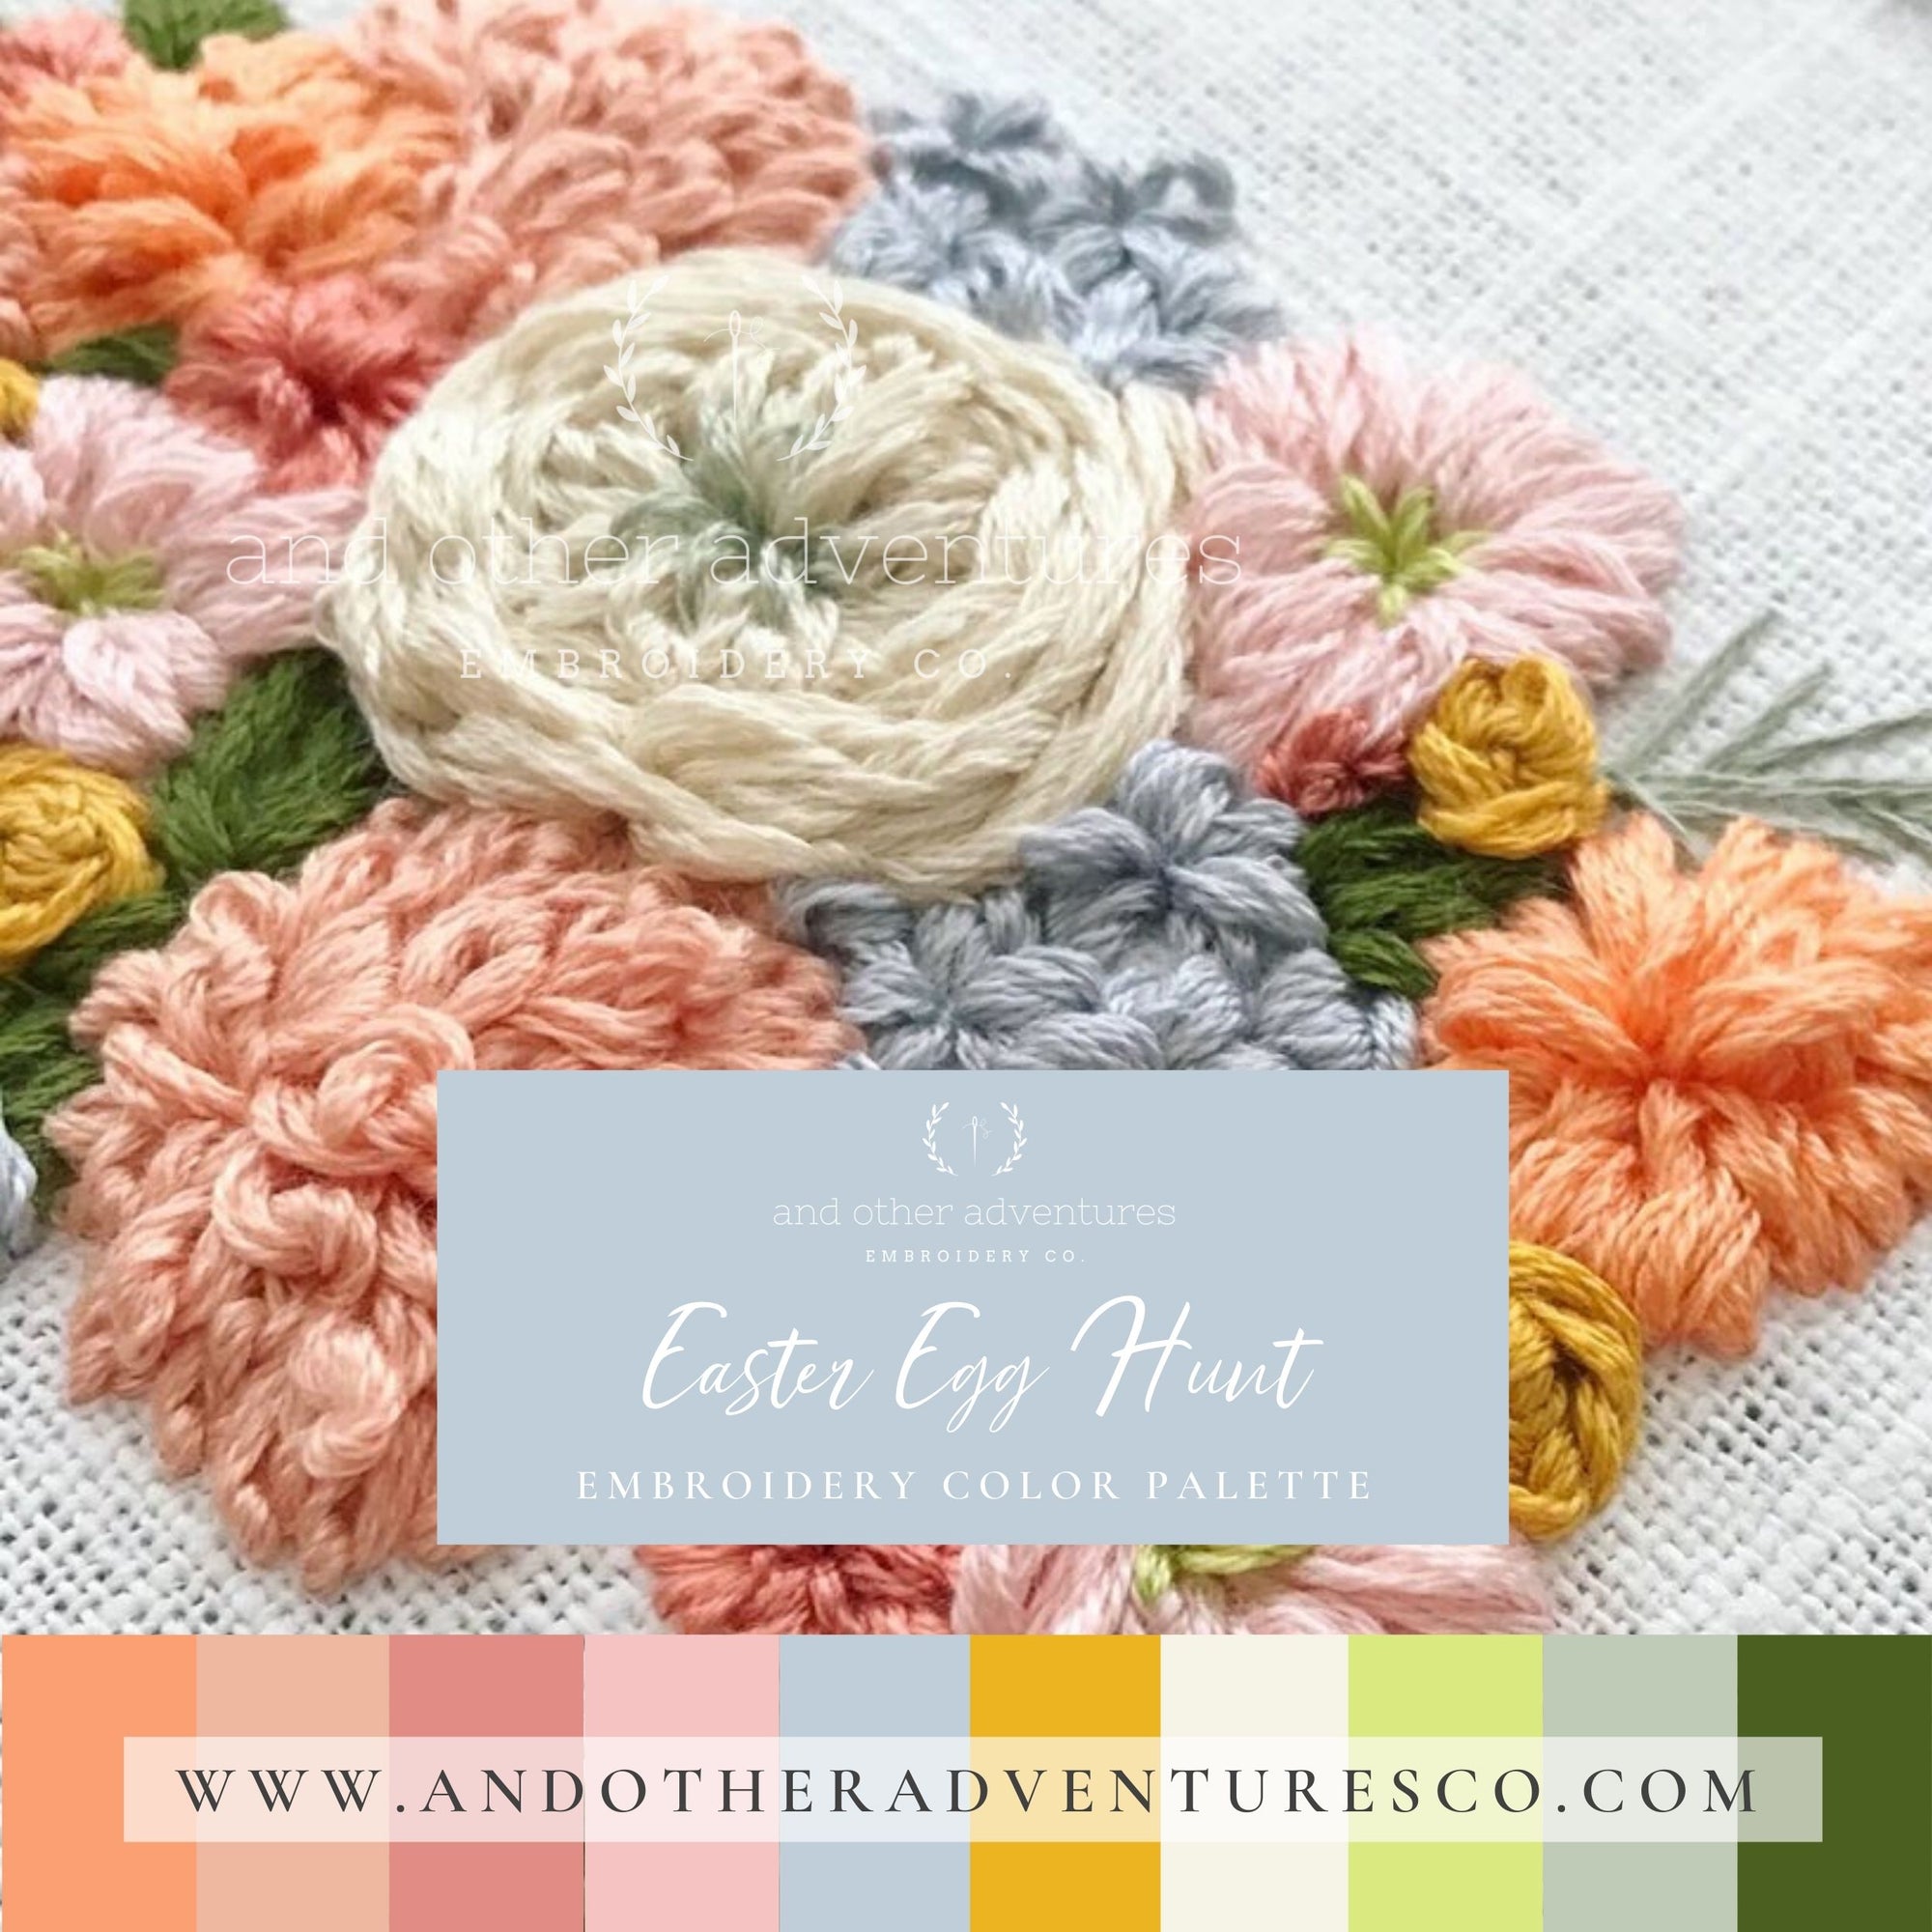 Easter Egg Hunt - Embroidery Color Palette